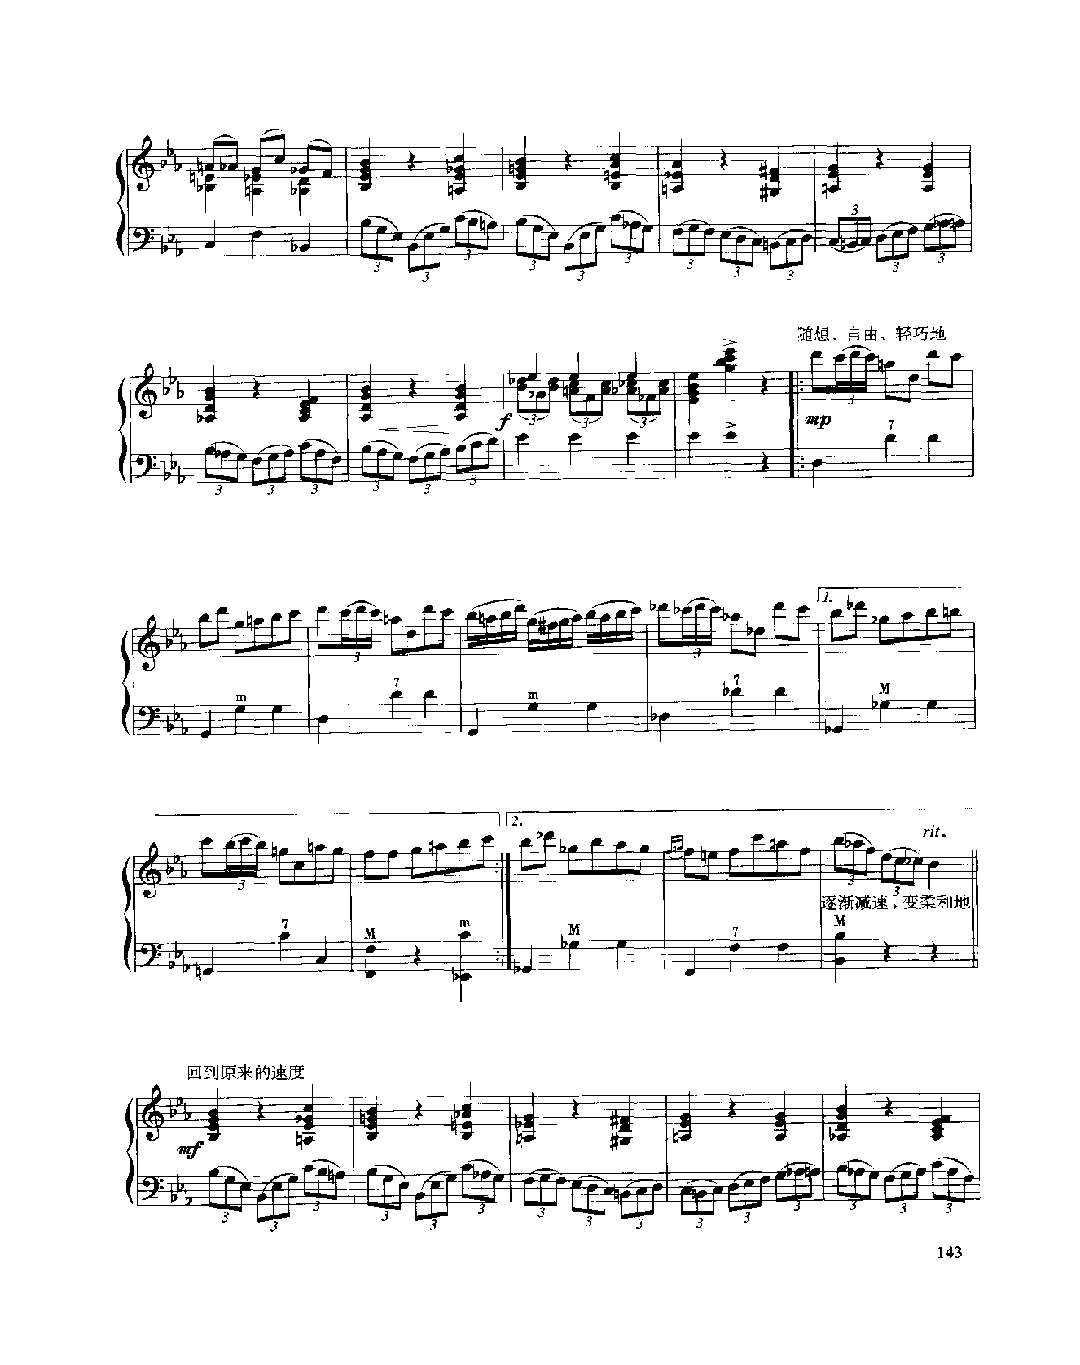 现代手风琴流行乐曲《奇特的舞曲》[法]A.阿斯蒂尔曲